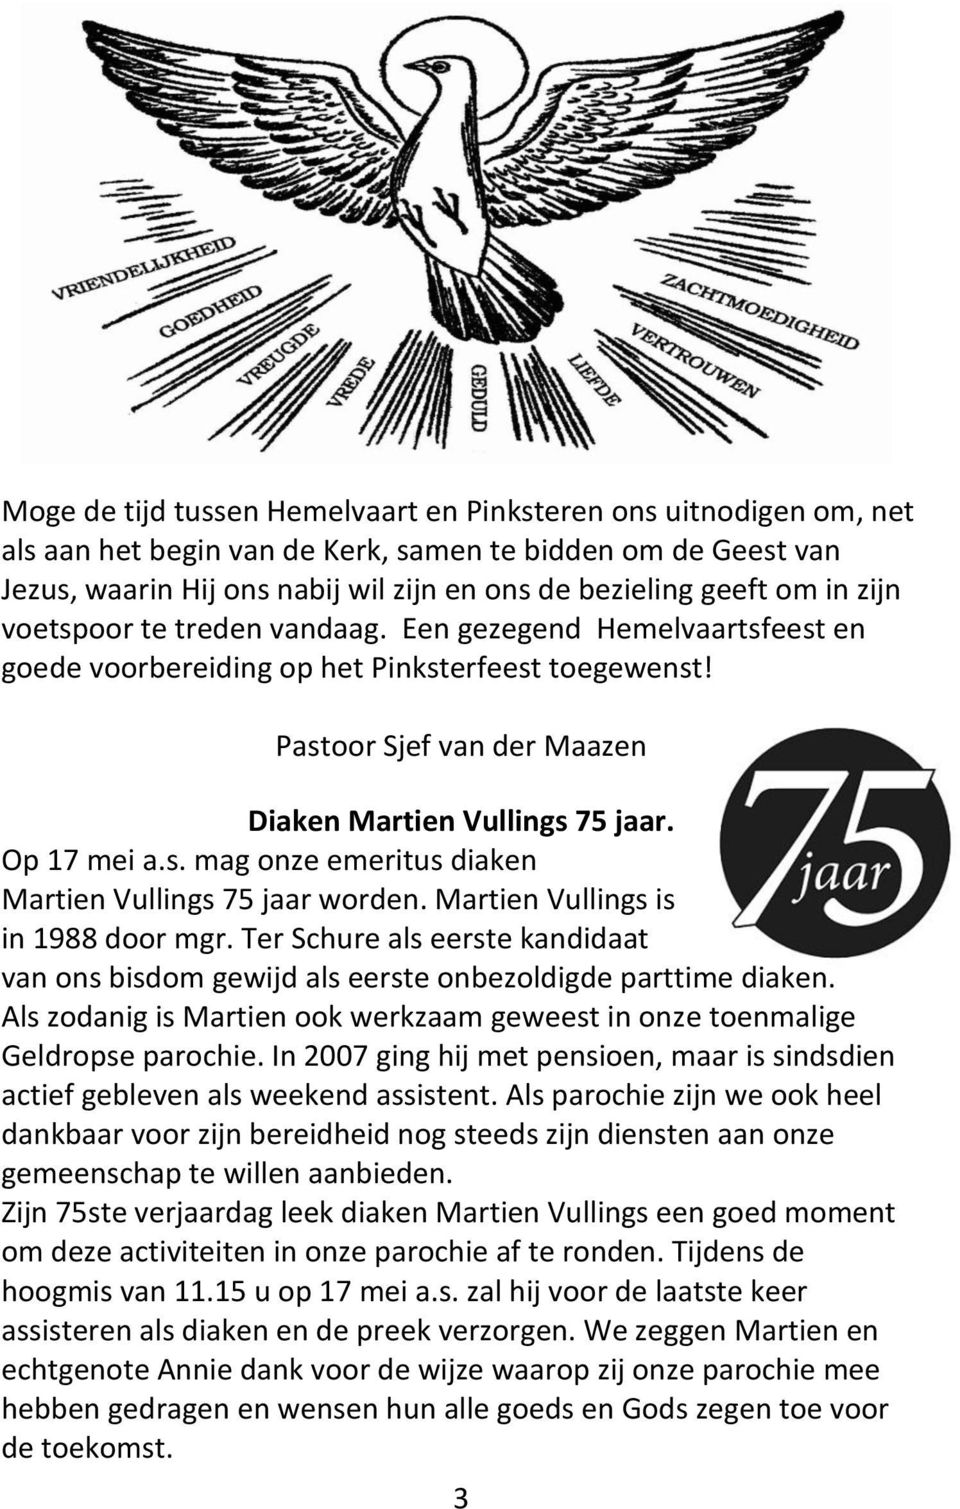 Martien Vullings is in 1988 door mgr. Ter Schure als eerste kandidaat van ons bisdom gewijd als eerste onbezoldigde parttime diaken.